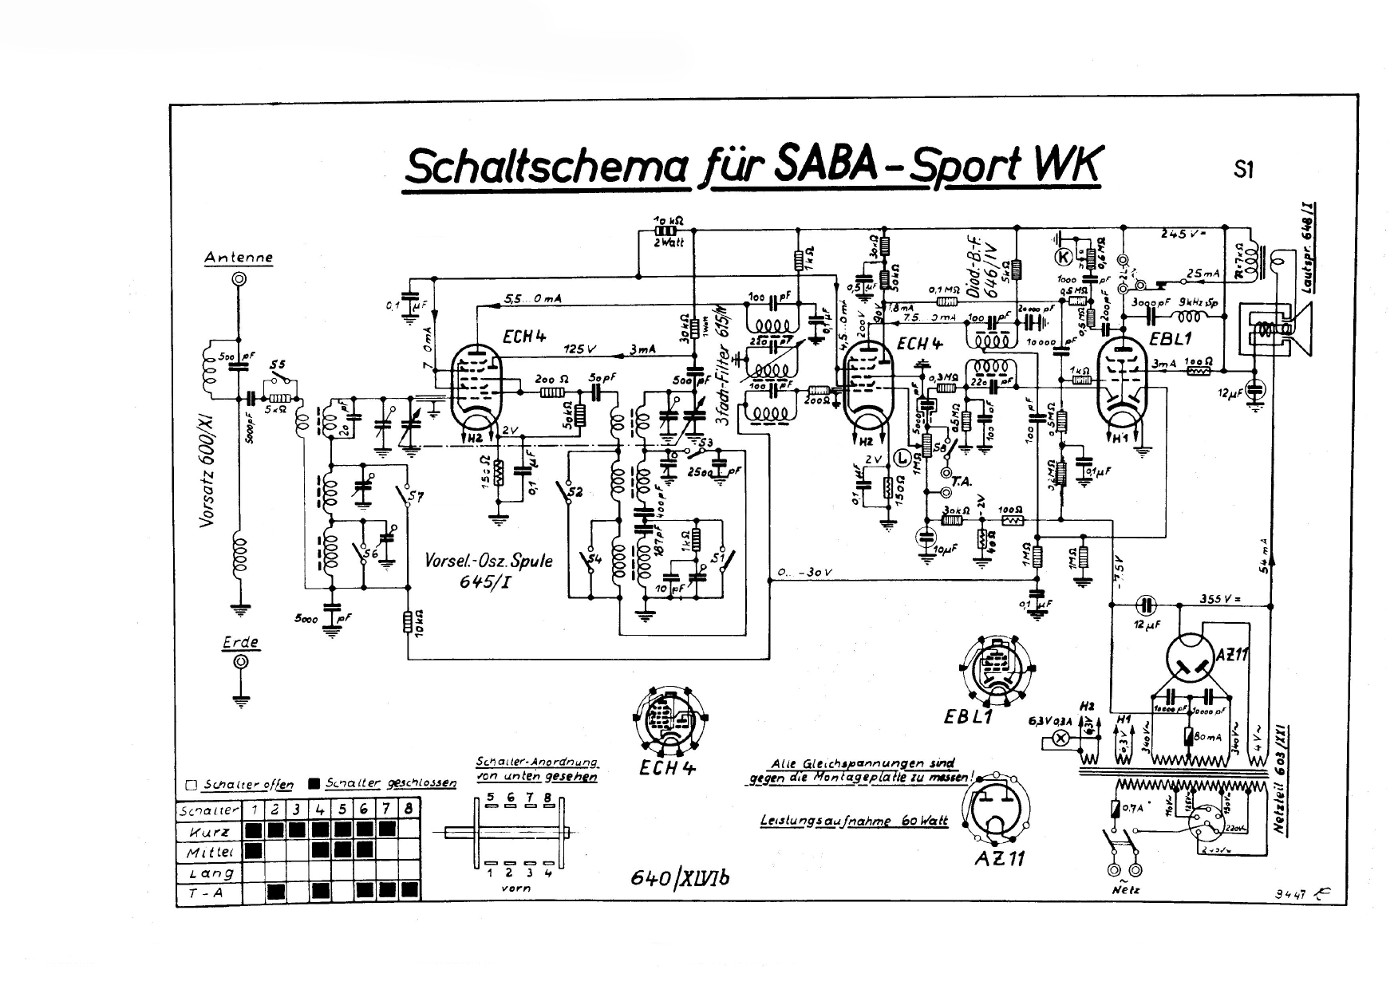 SABA Sport WK schematics